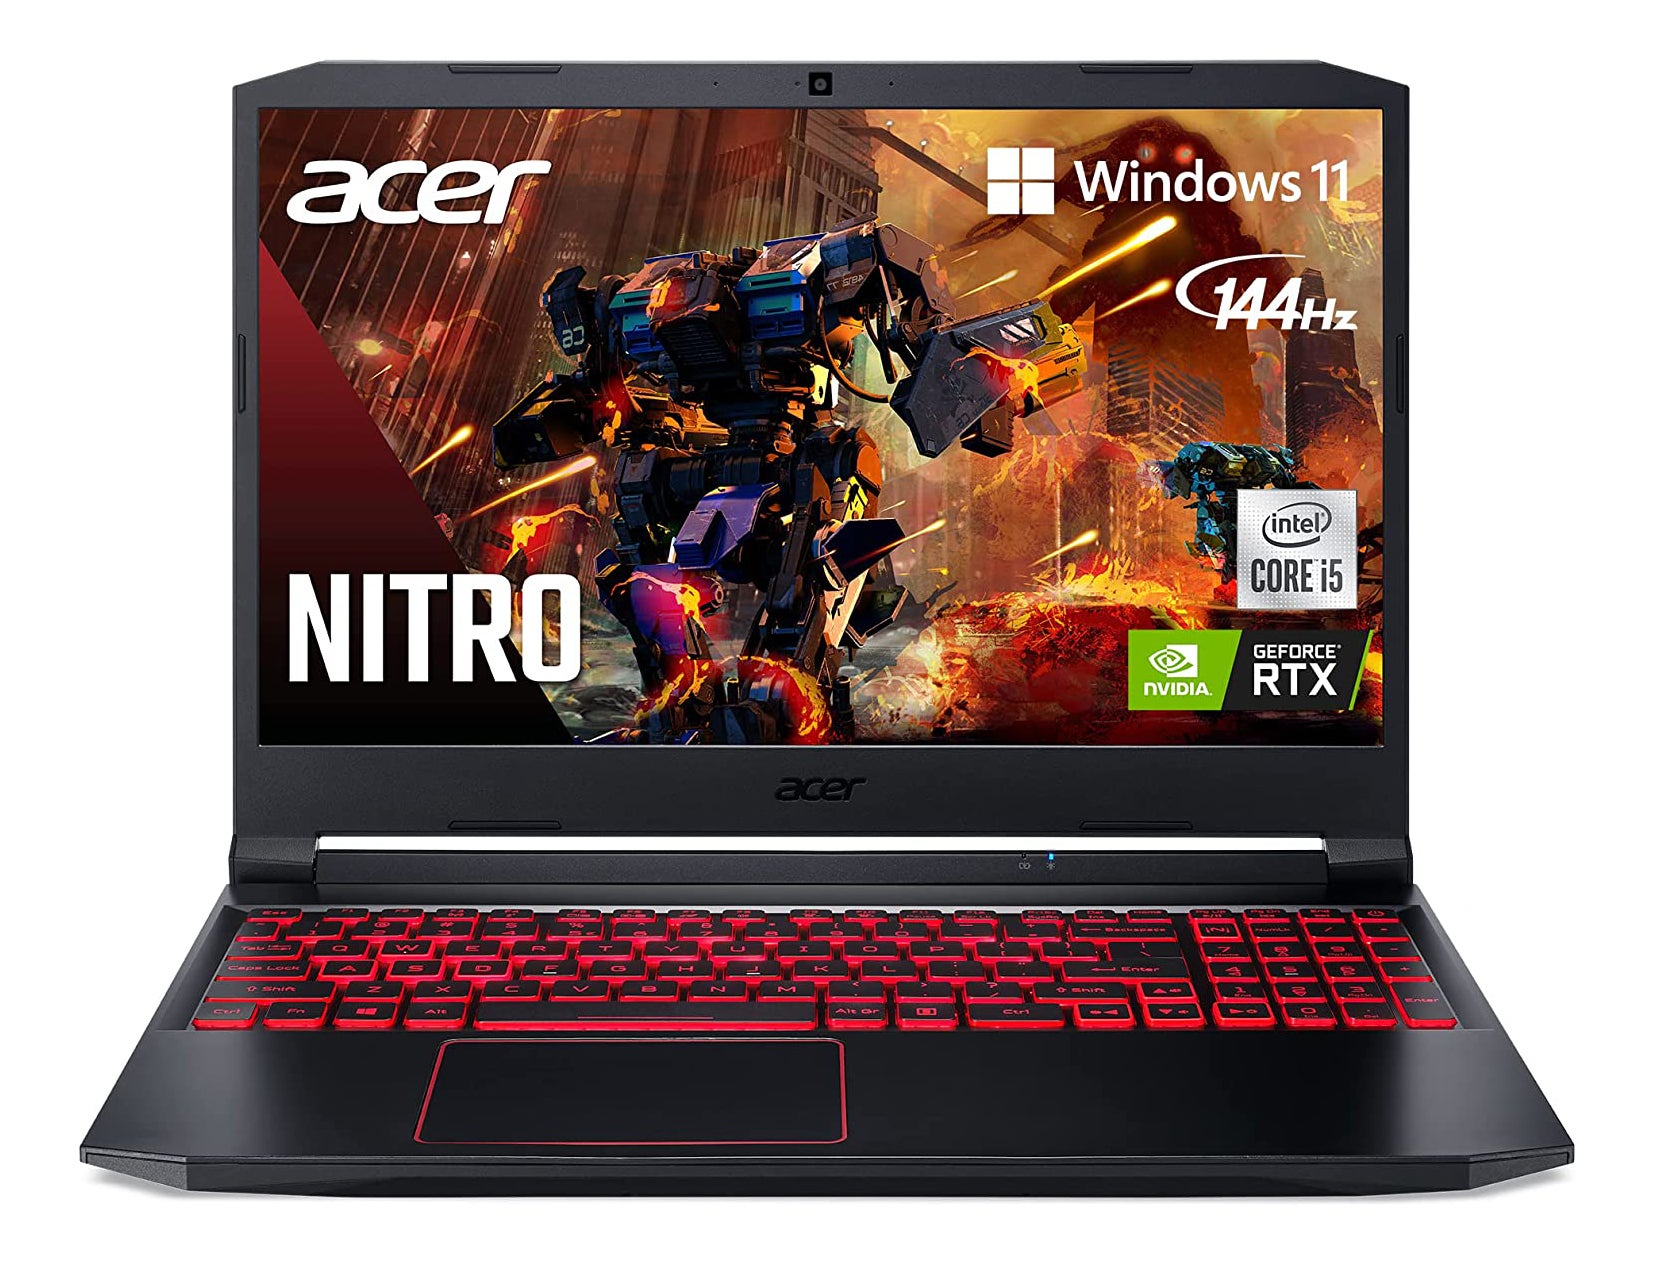 Acer Nitro 5 Gaming Laptop with Nvidia GeForce RTX 3050 GPU